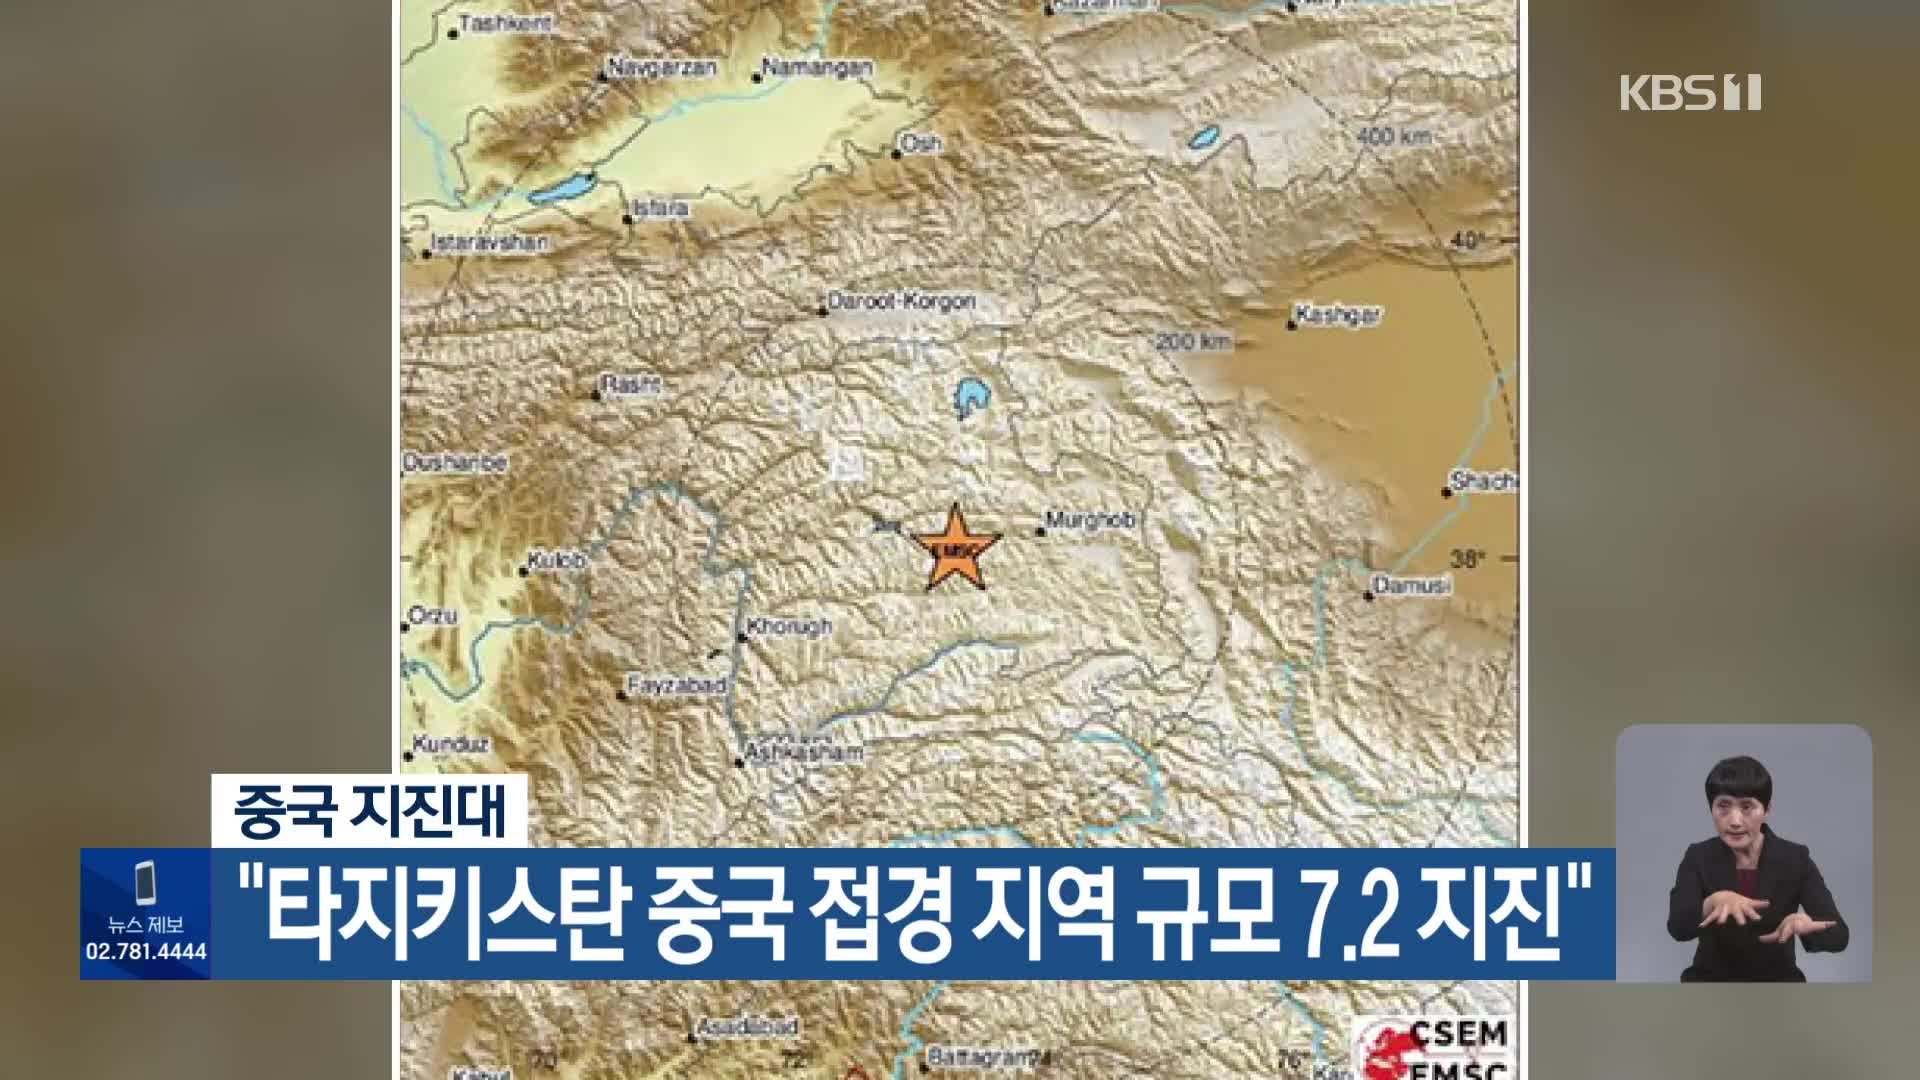 중국 지진대 “타지키스탄 중국 접경 지역 규모 7.2 지진”